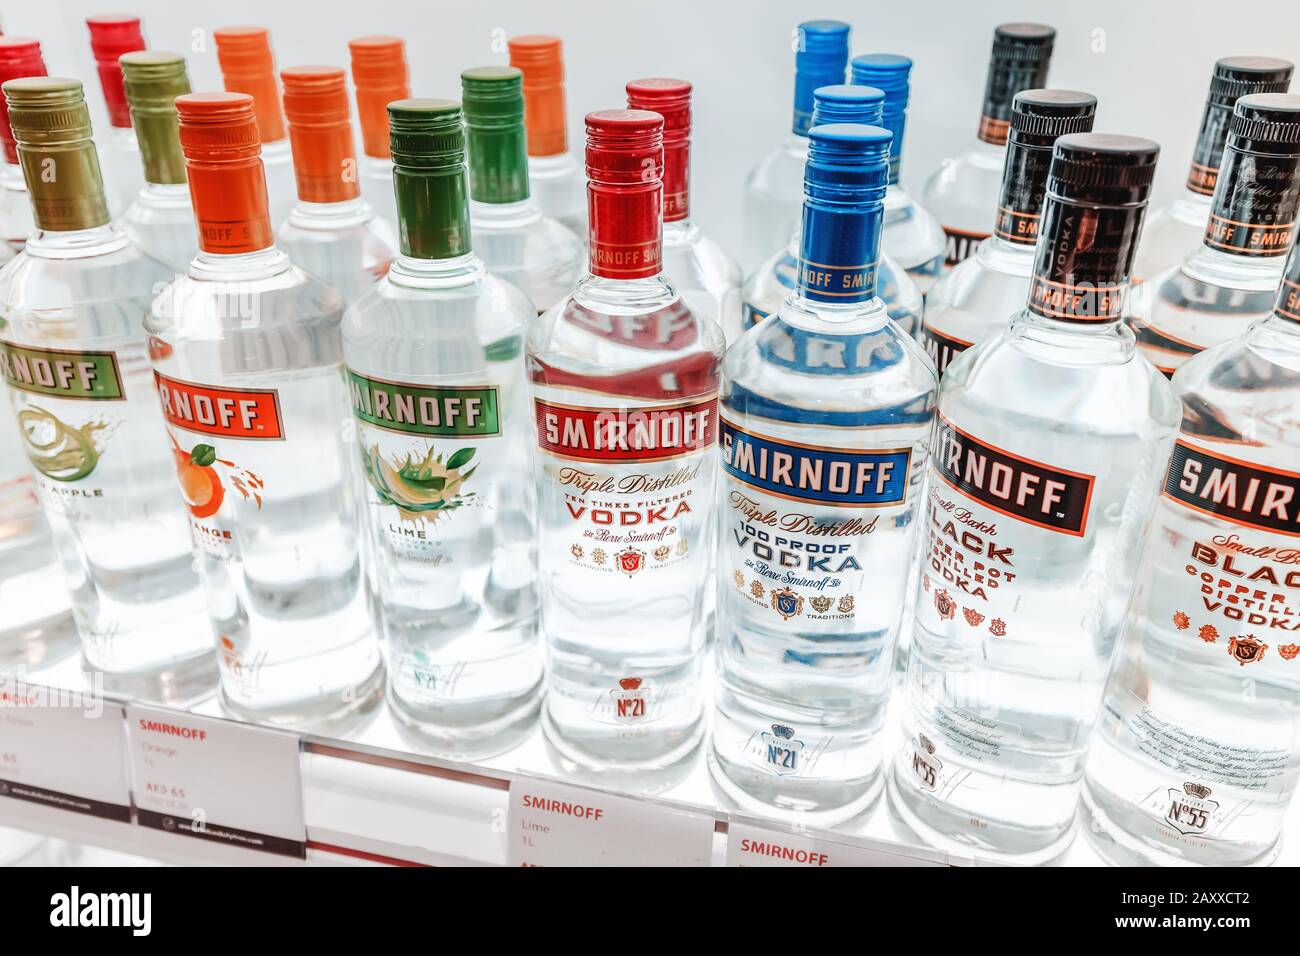 1 dicembre 2019, Dubai, Emirati Arabi Uniti: Famoso spirito di vodka con marchio Smirnoff in vendita in negozio Foto Stock